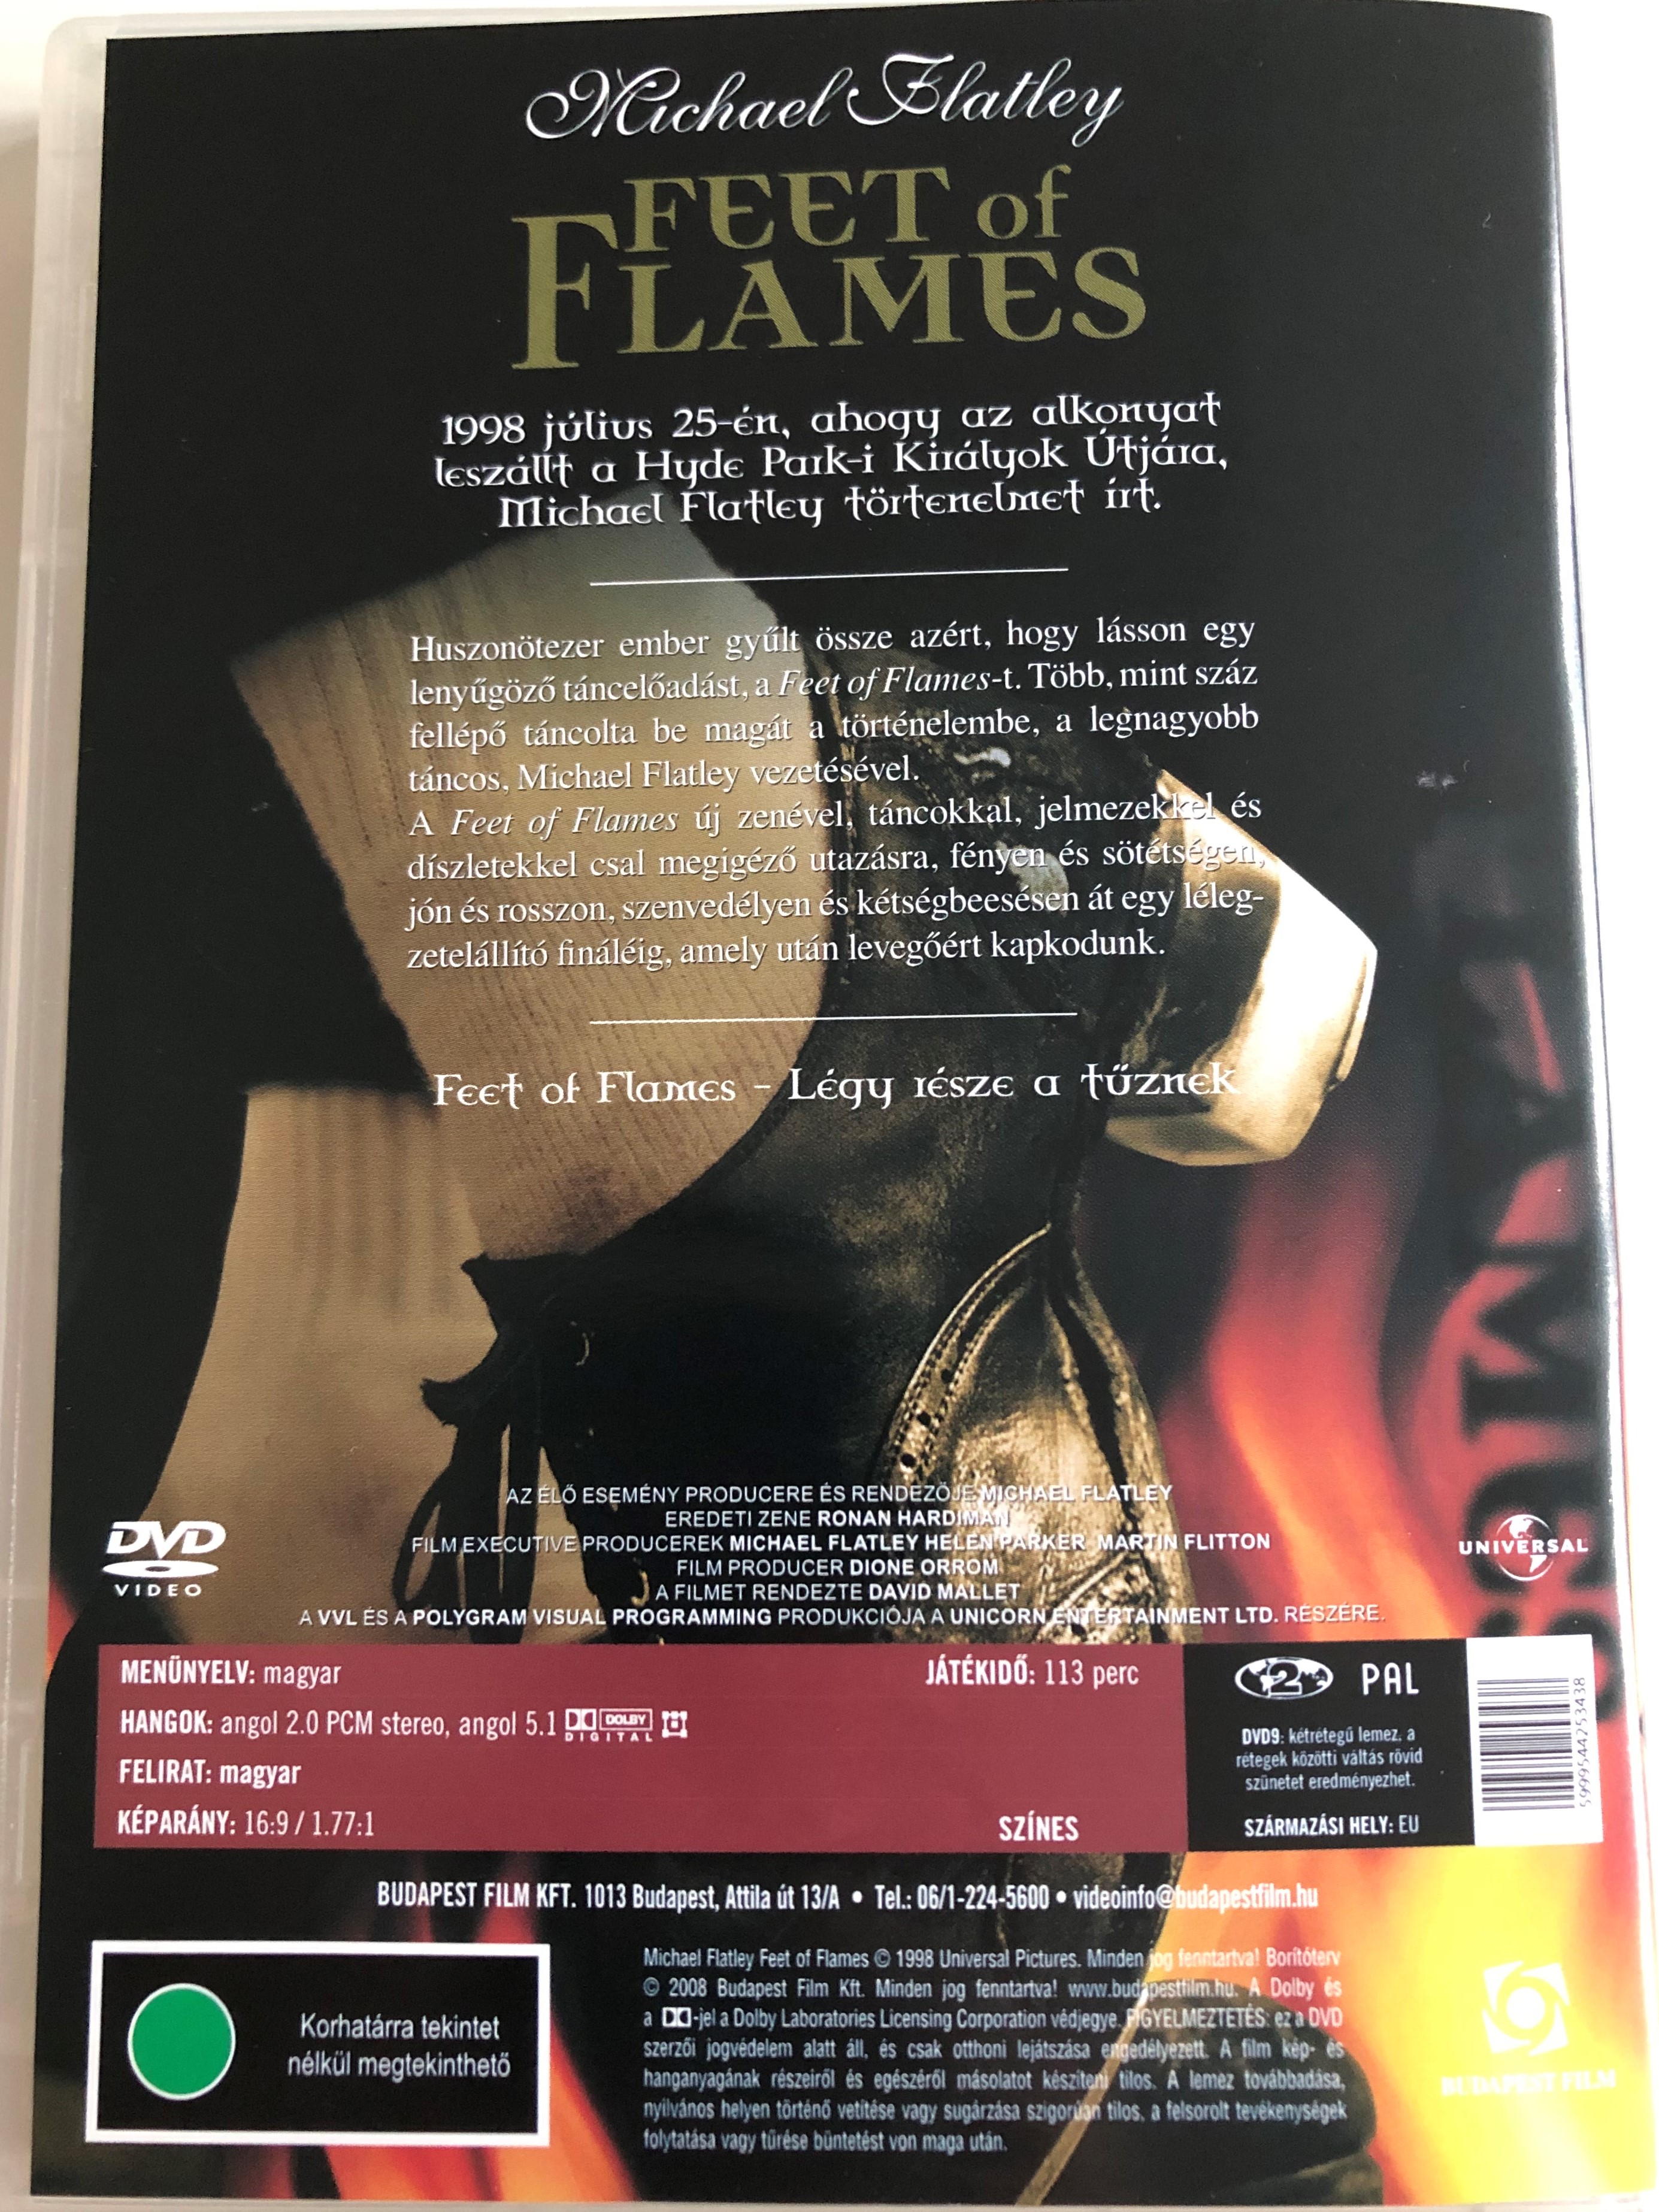 michael-flatley-feet-of-flames-dvd-1998-az-vtized-t-ncesem-nye-2.jpg